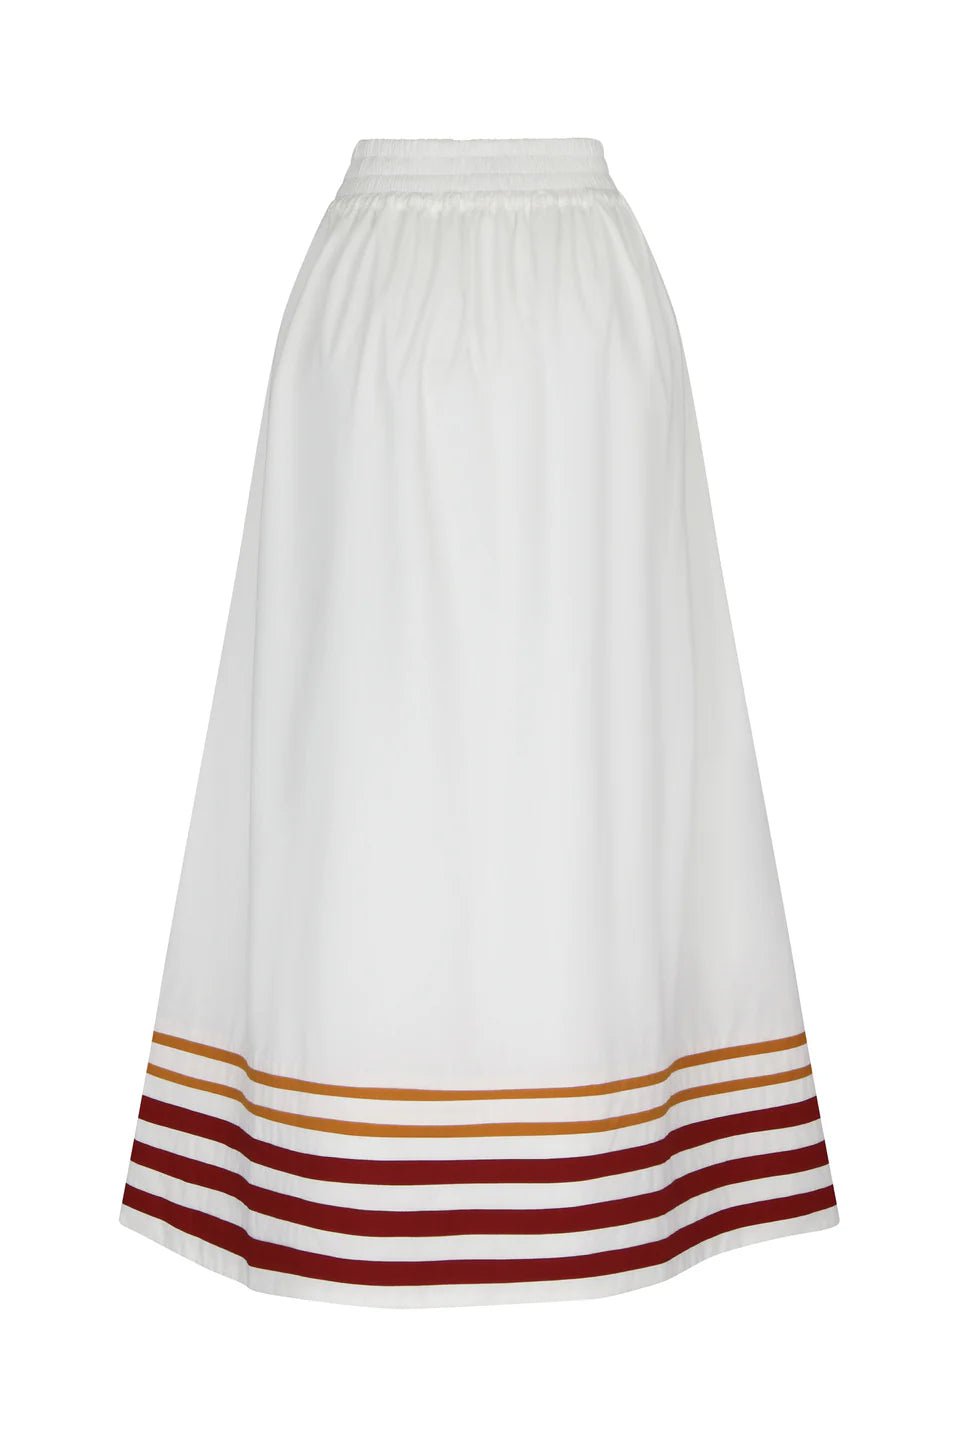 De Loreta Skirt Encantada Skirt in White & Tangerine